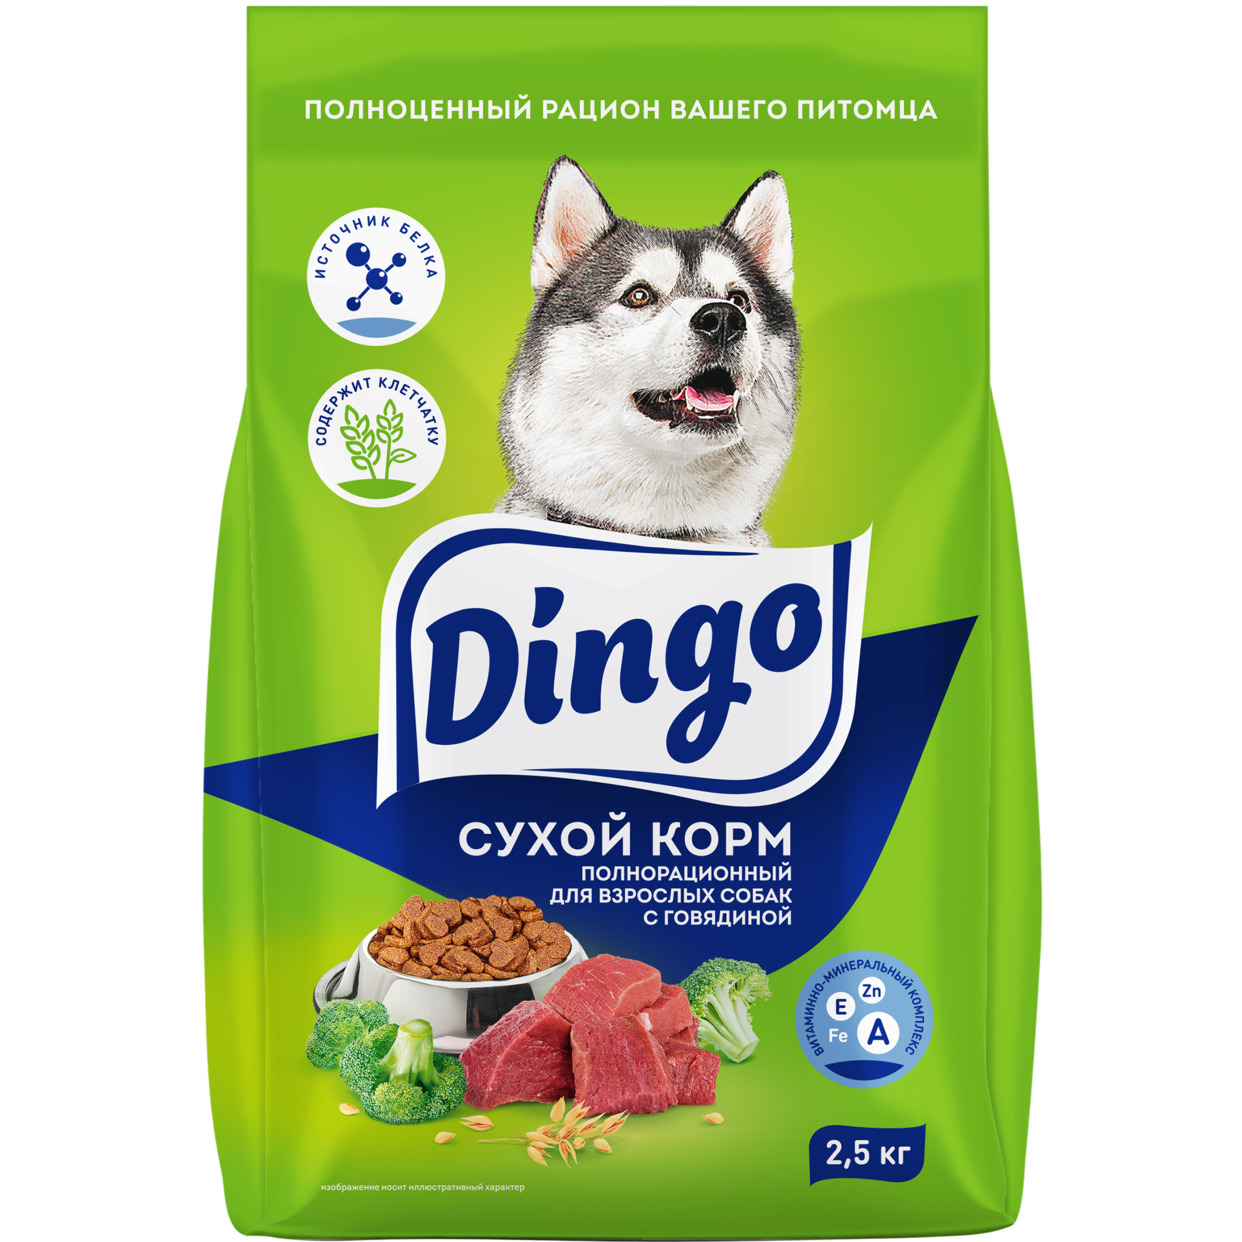 Dingo корм сухой полнорационный для взрослых собак , пп, 2,5 кг по акции в Пятерочке